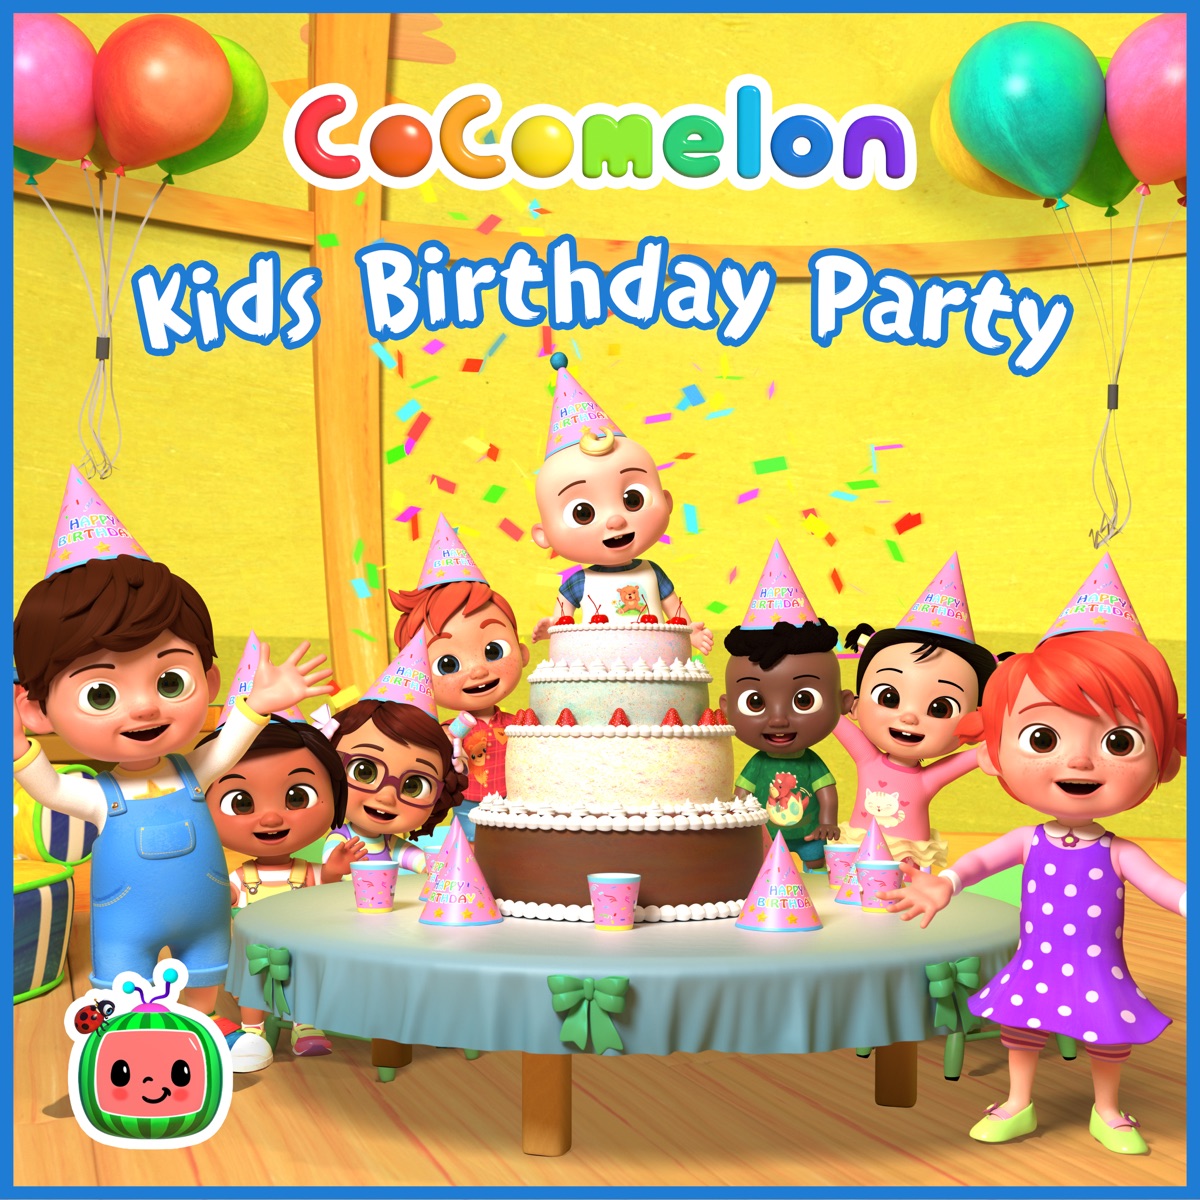 CoComelon Kids Hits Vol.11 - Album by CoComelon